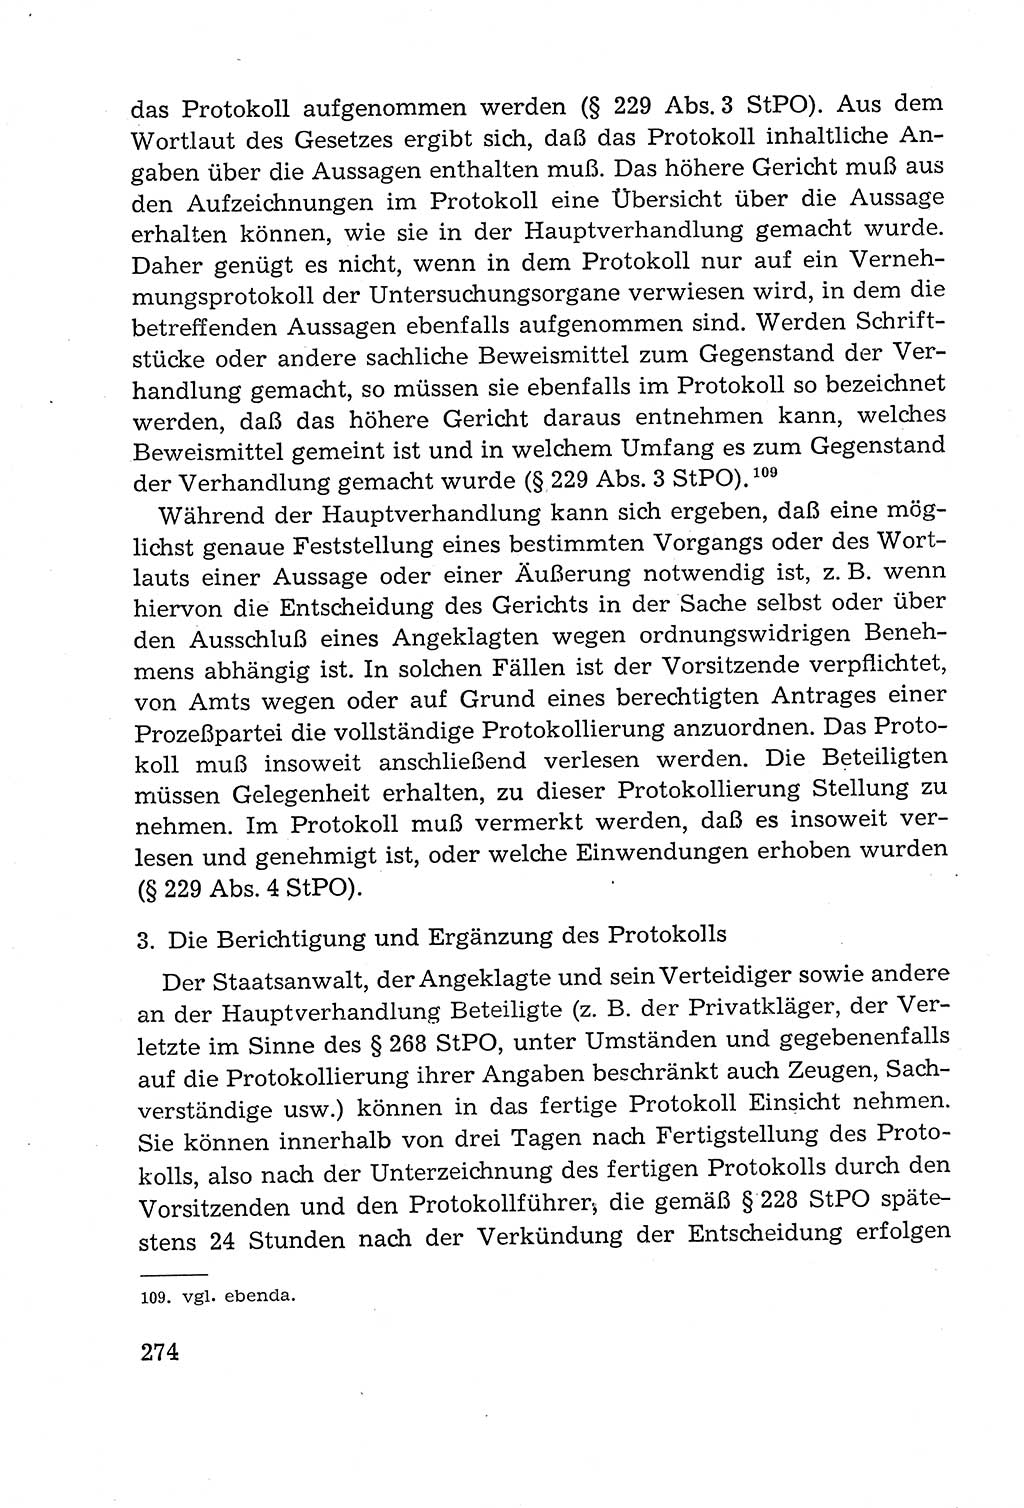 Leitfaden des Strafprozeßrechts der Deutschen Demokratischen Republik (DDR) 1959, Seite 274 (LF StPR DDR 1959, S. 274)